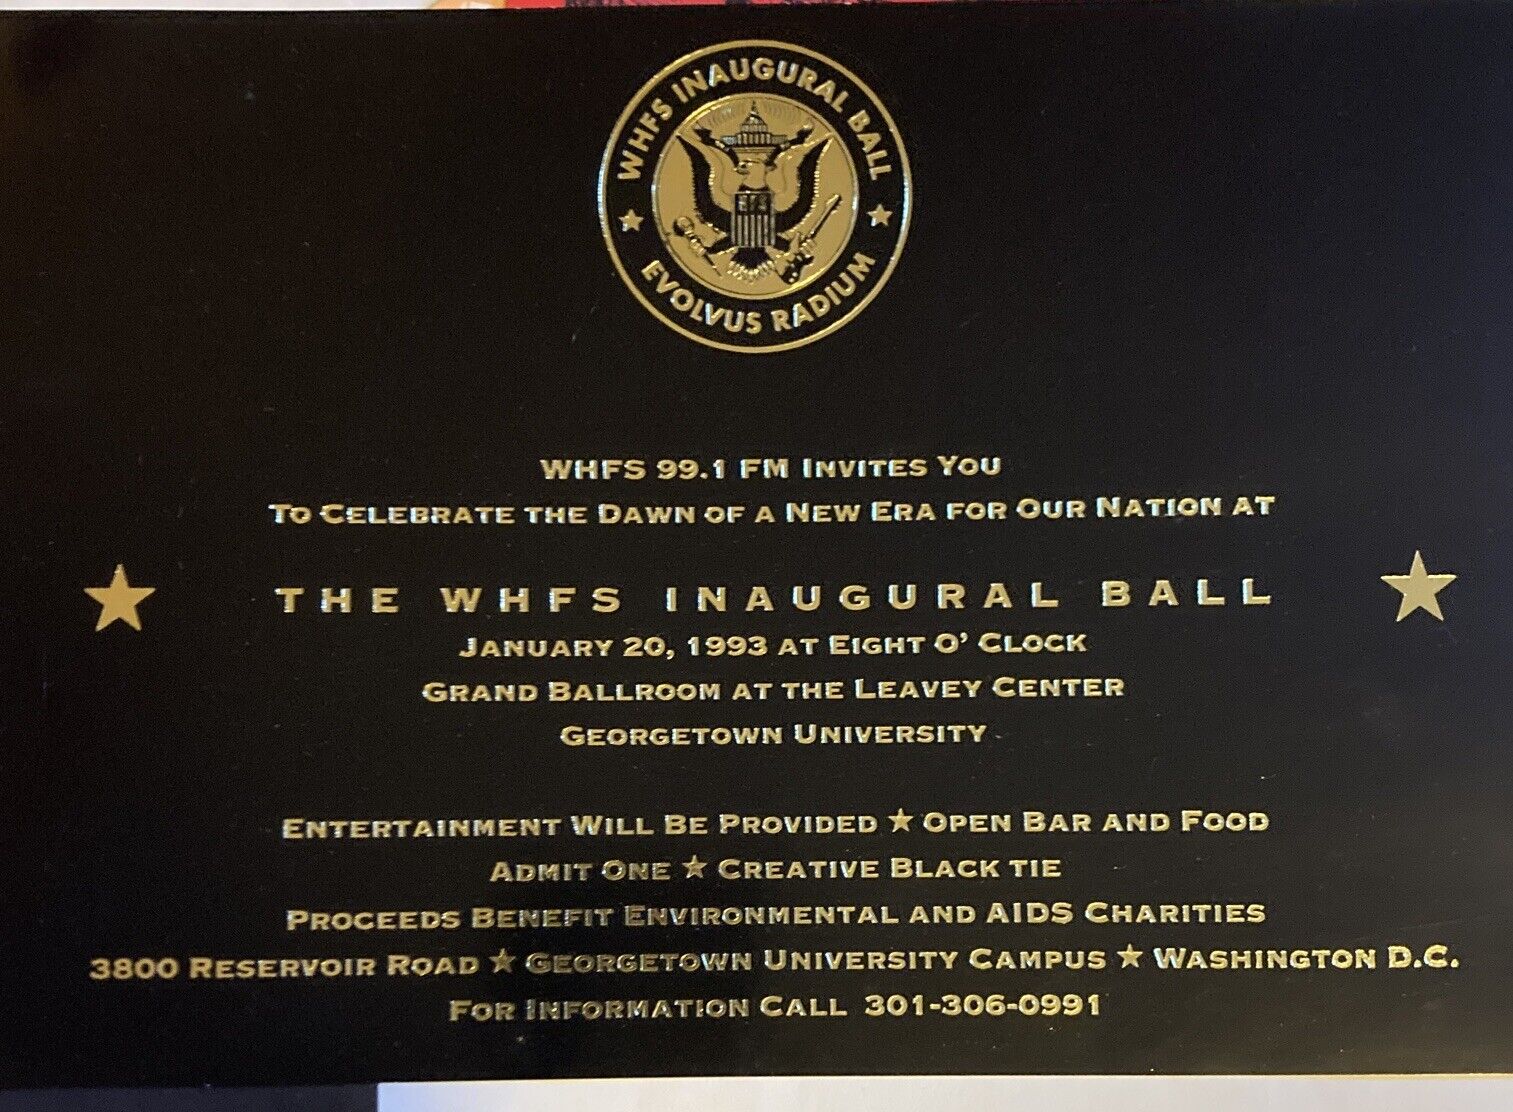 WHFS Inaguaral ball invite 1993 american history HIV Clinton white house invites